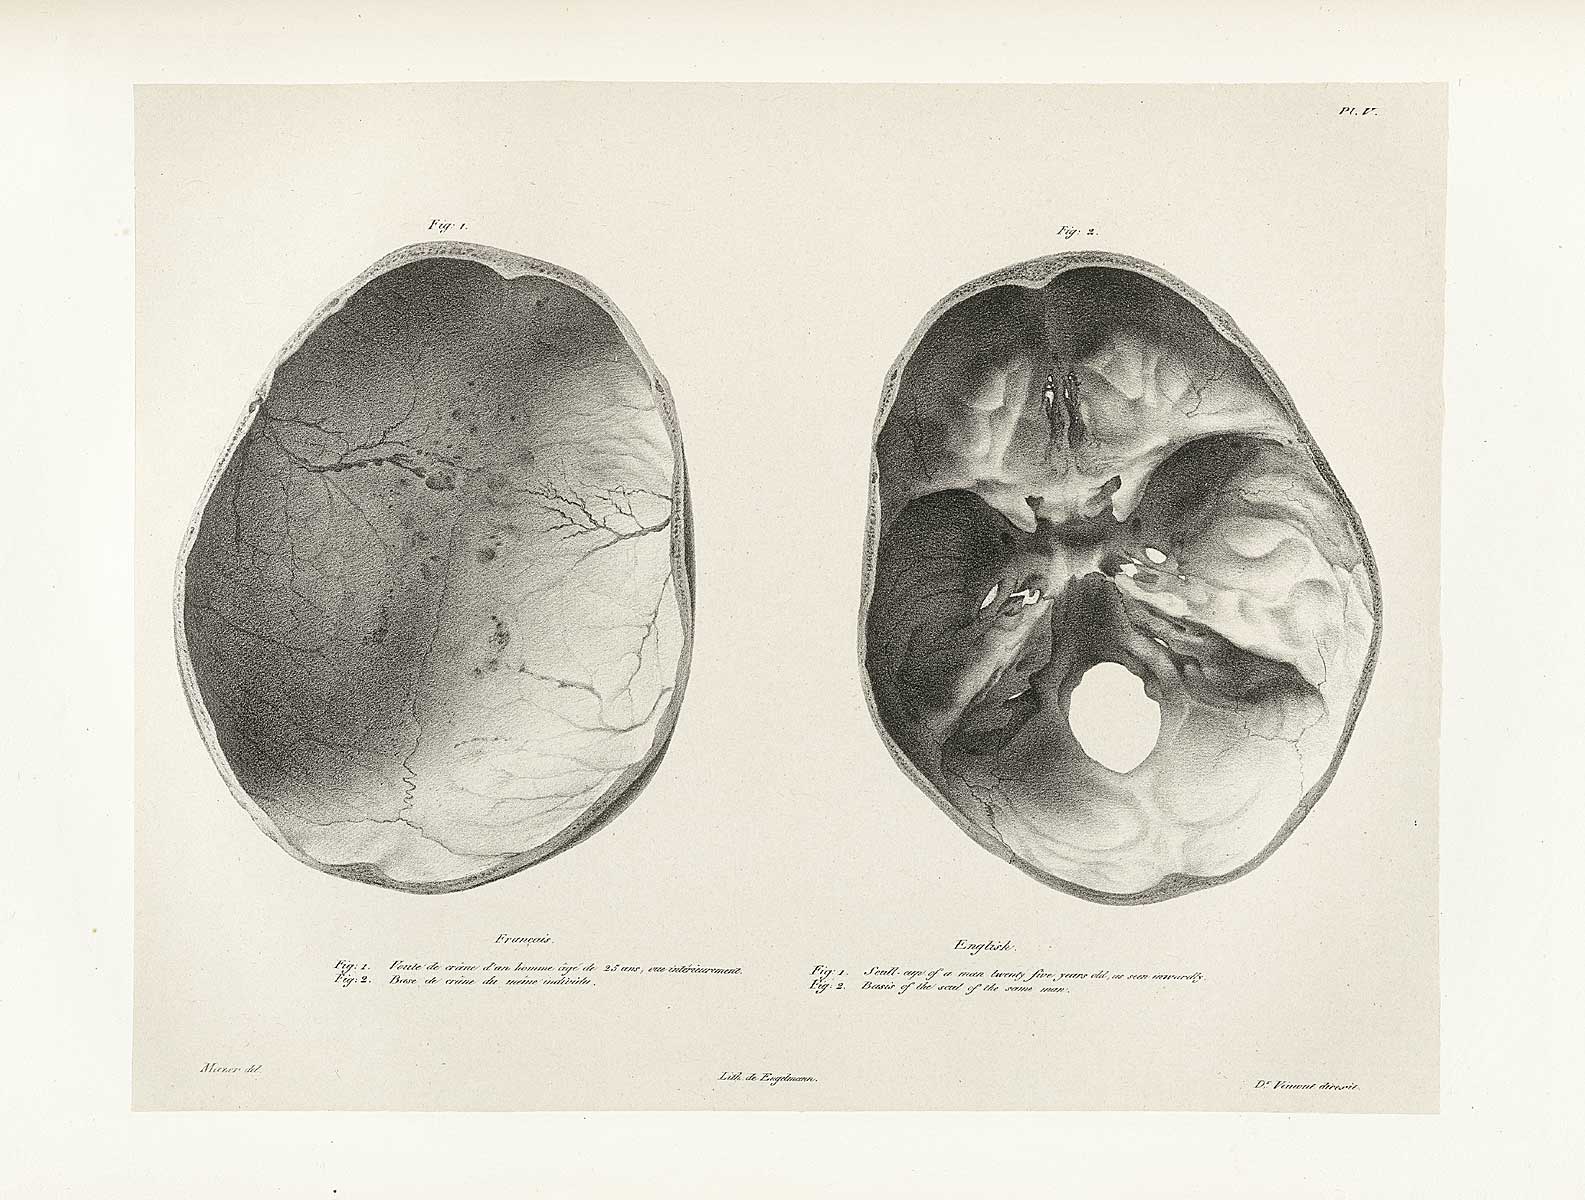 Table 5 of Joseph Vimont's Traité de phrénologie humaine et comparée, featuring two views of the skull cap of a twenty five year old man.